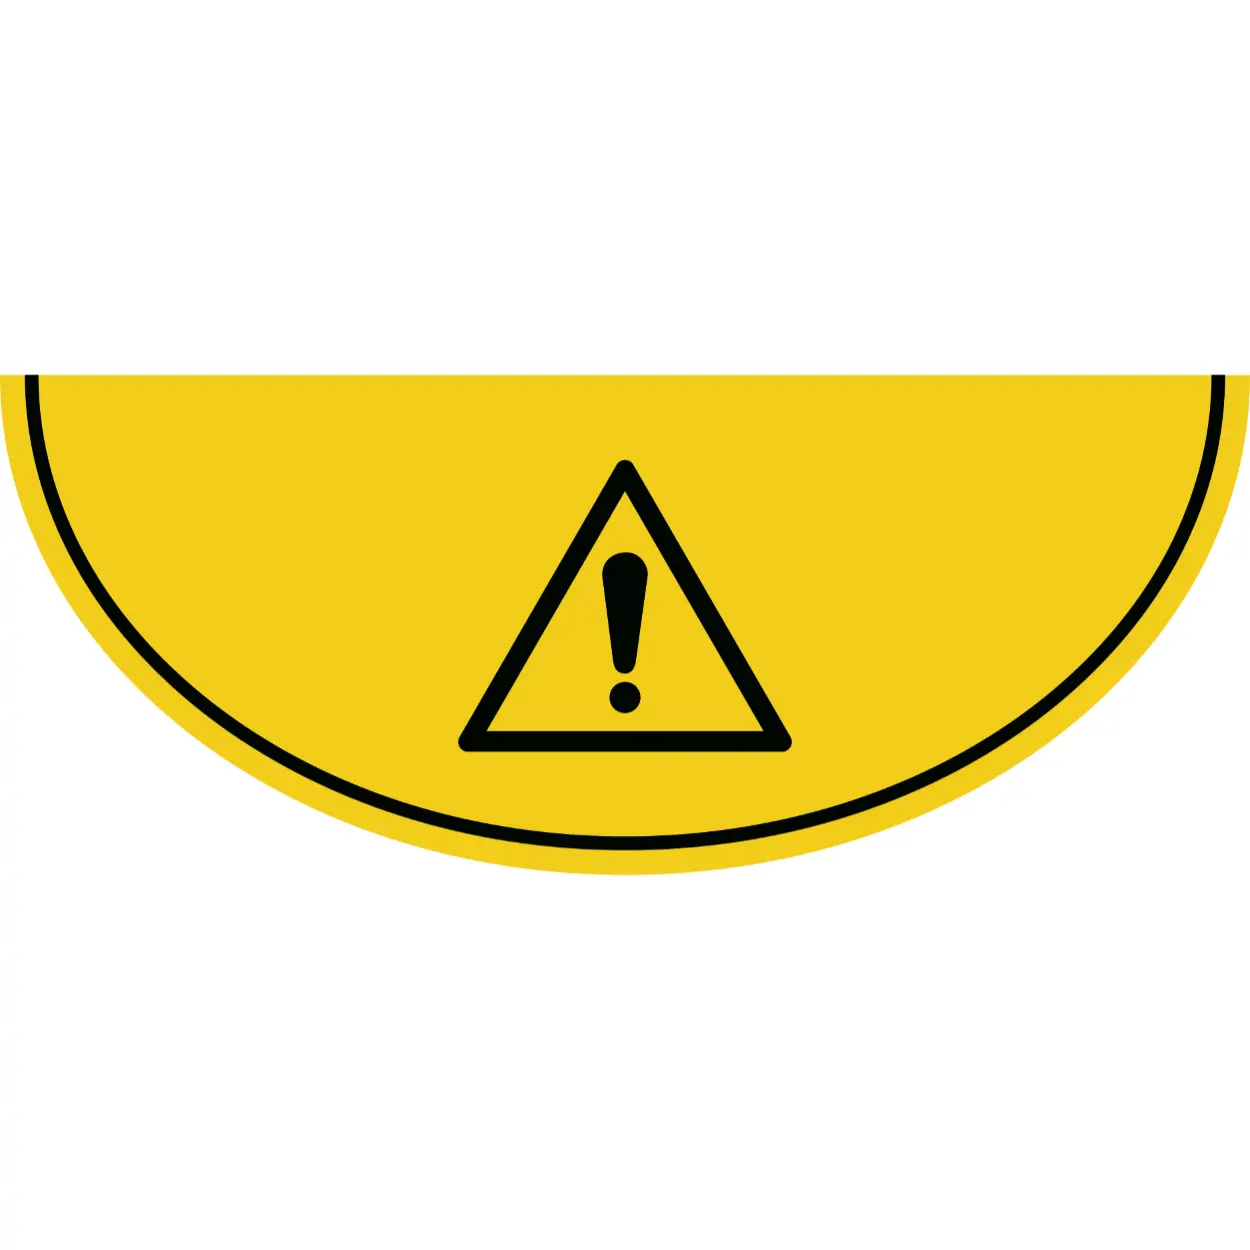 Podlahová značka výseč – Výstraha, riziko, žlutá